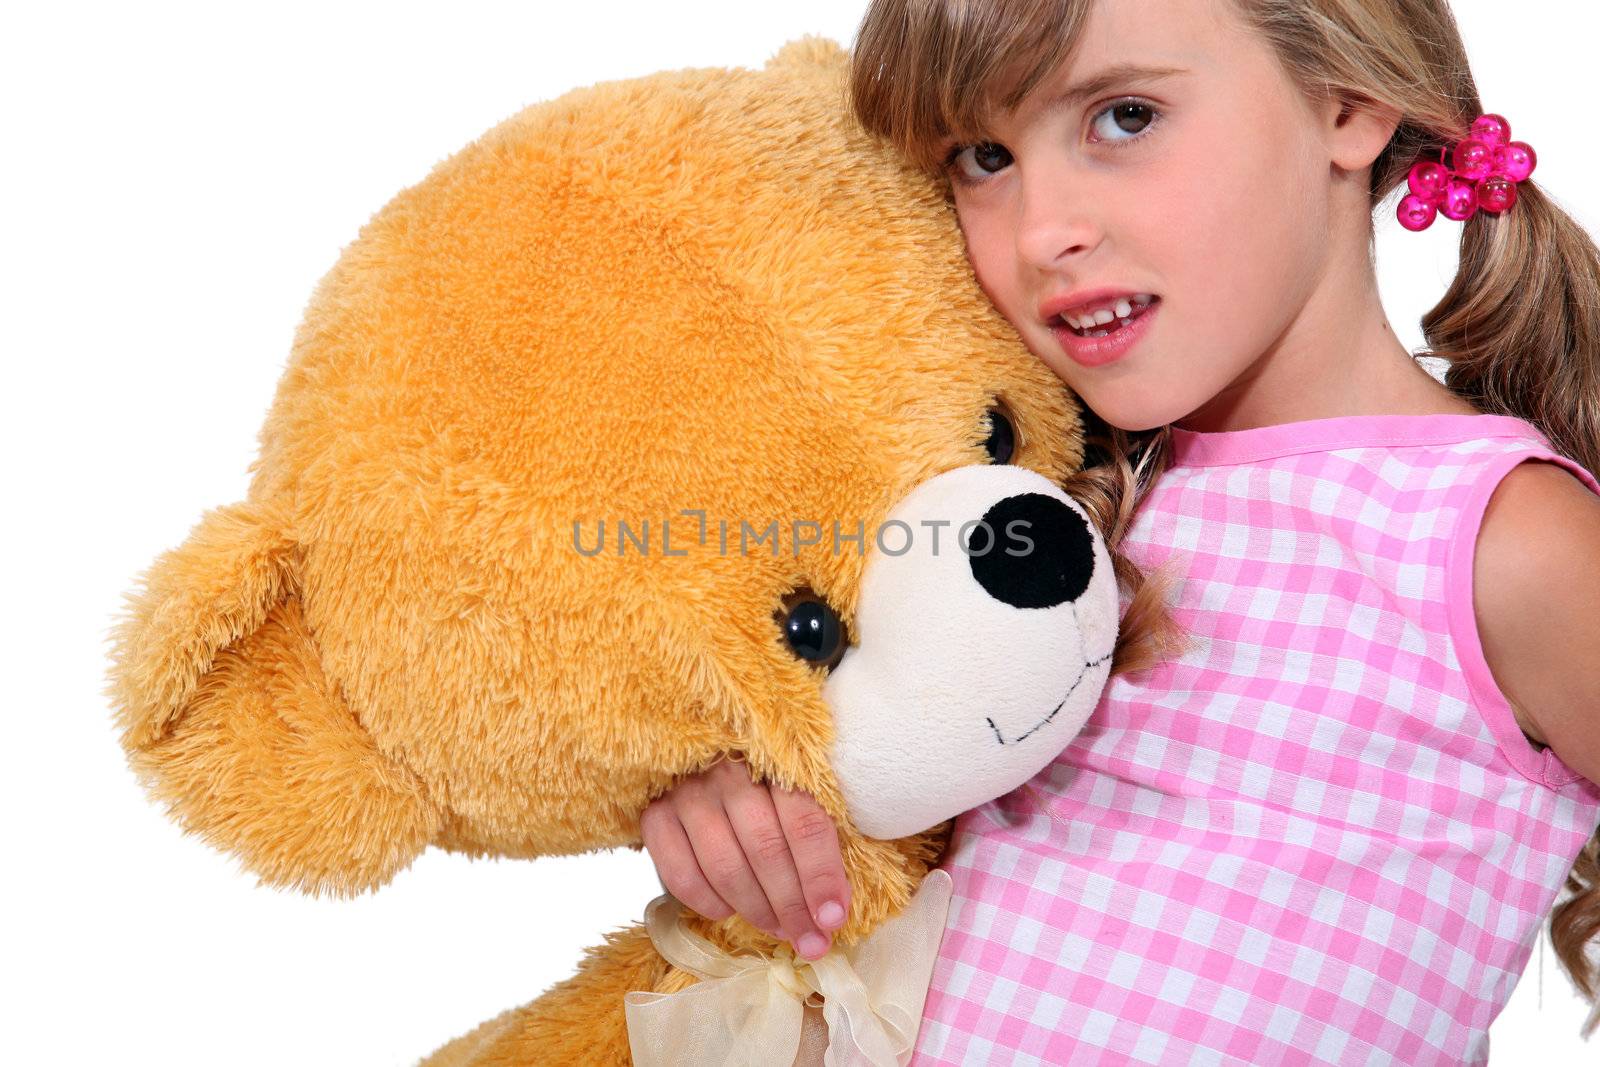 Girl with a teddy bear